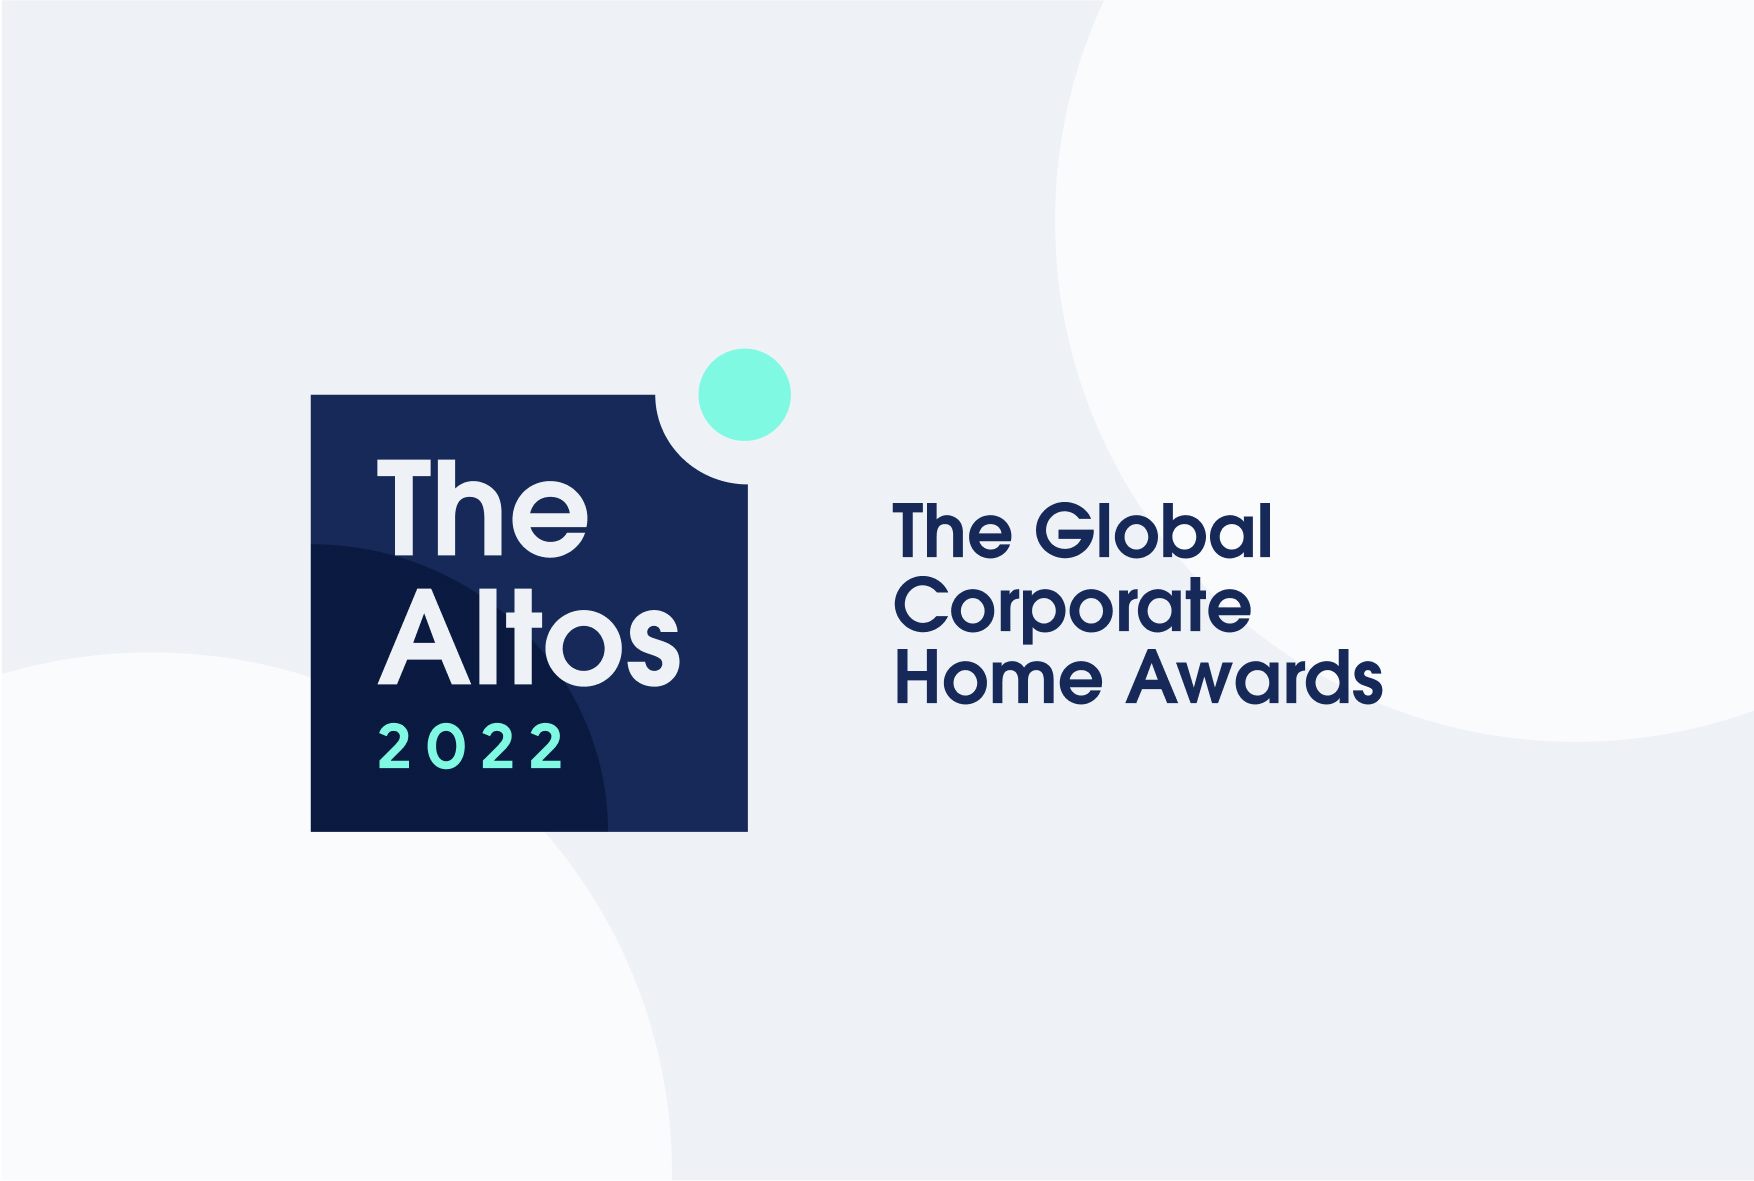 The Altos 2022